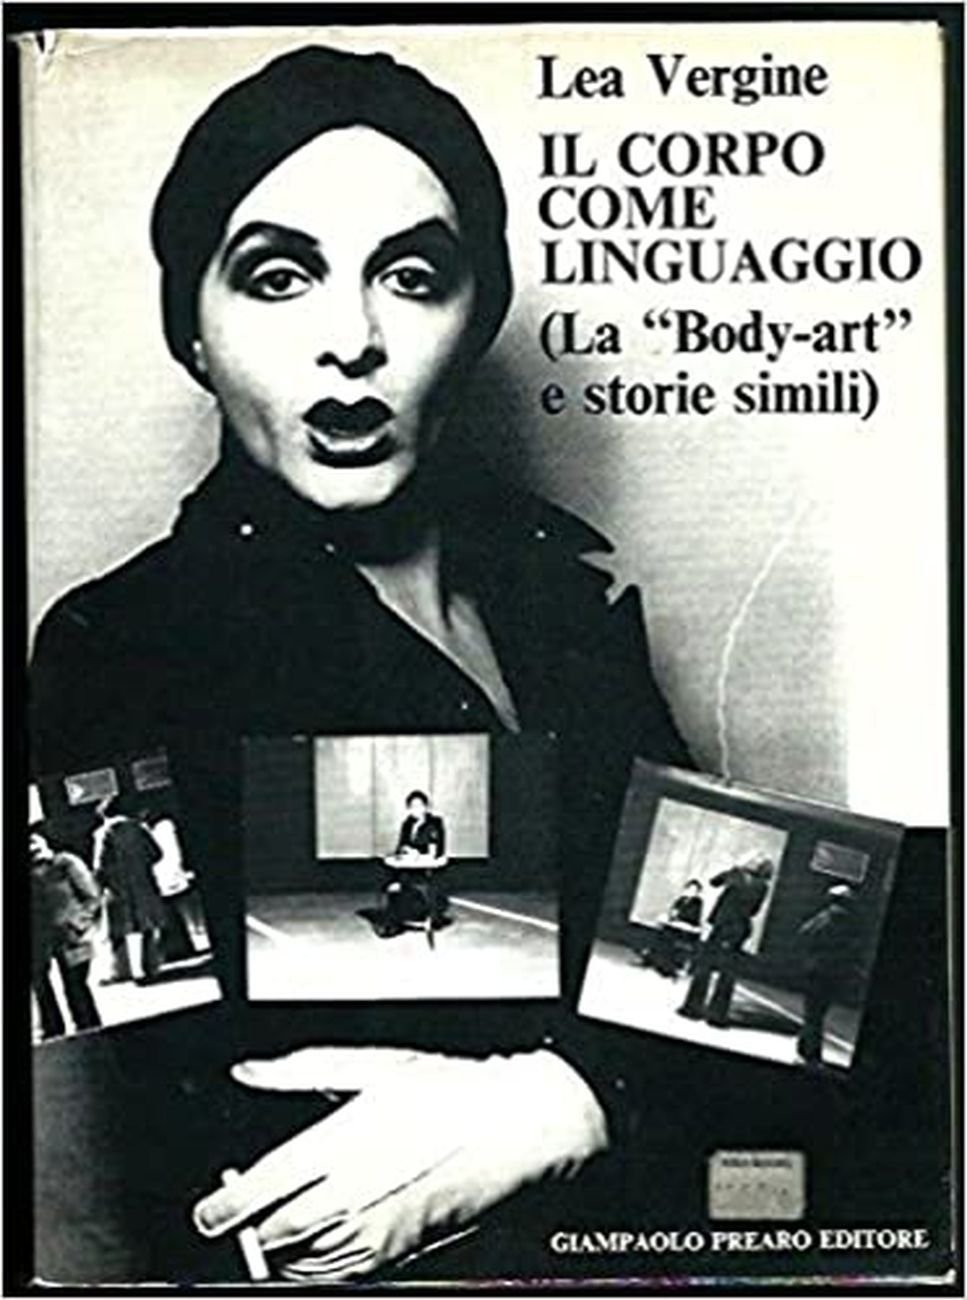 Lea Vergine – Il corpo come linguaggio (Prearo, Milano 1974)